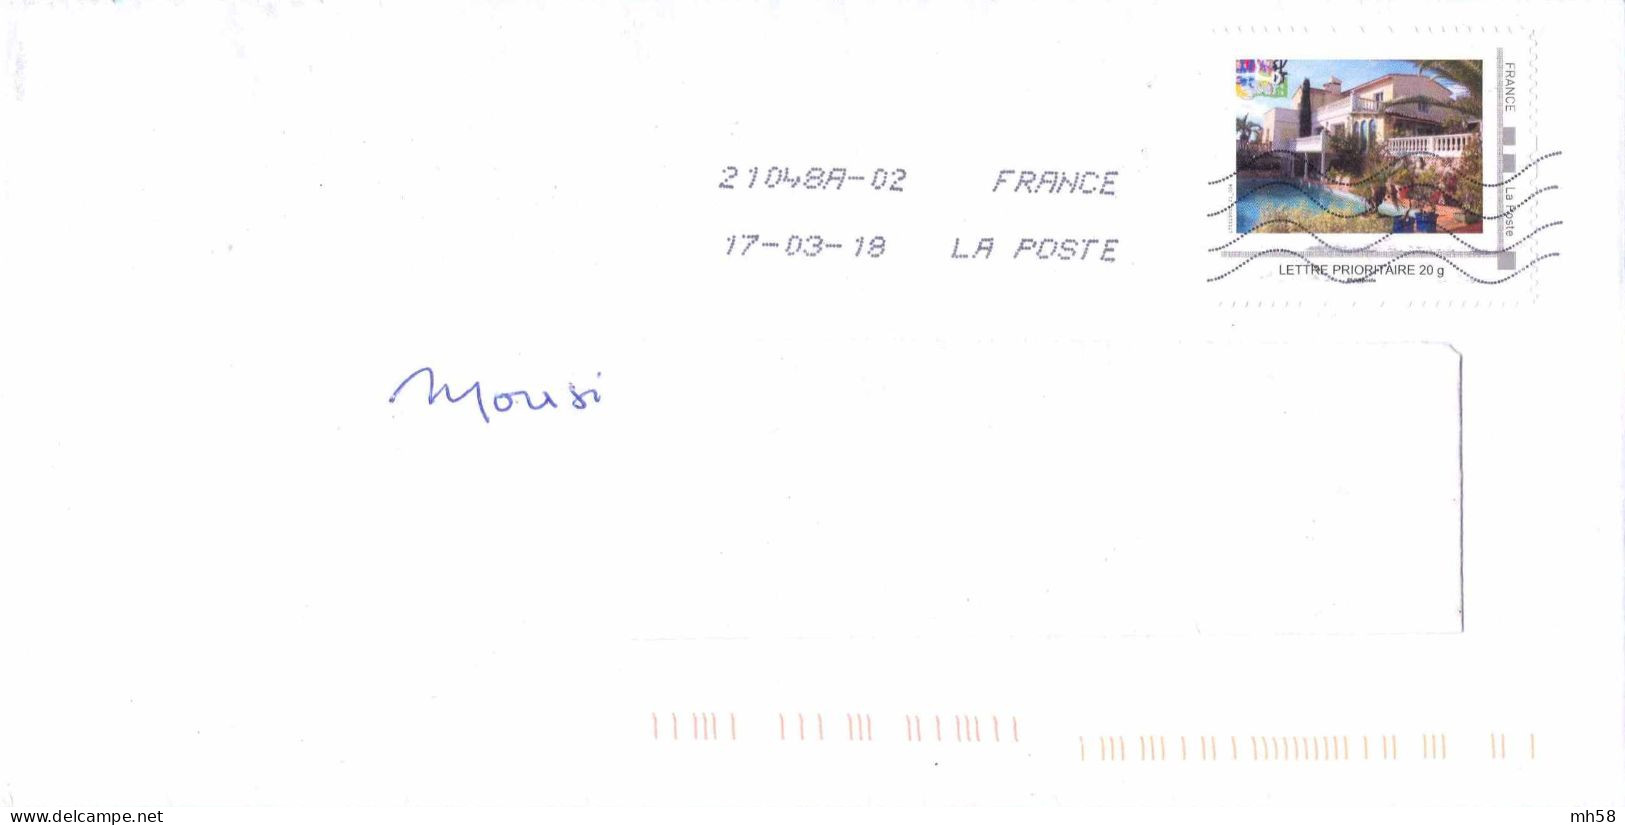 FRANCE - MonTimbraMoi Villa Avec Piscine Sur Enveloppe De 2018 - Lettre Prioritaire 20g - Storia Postale